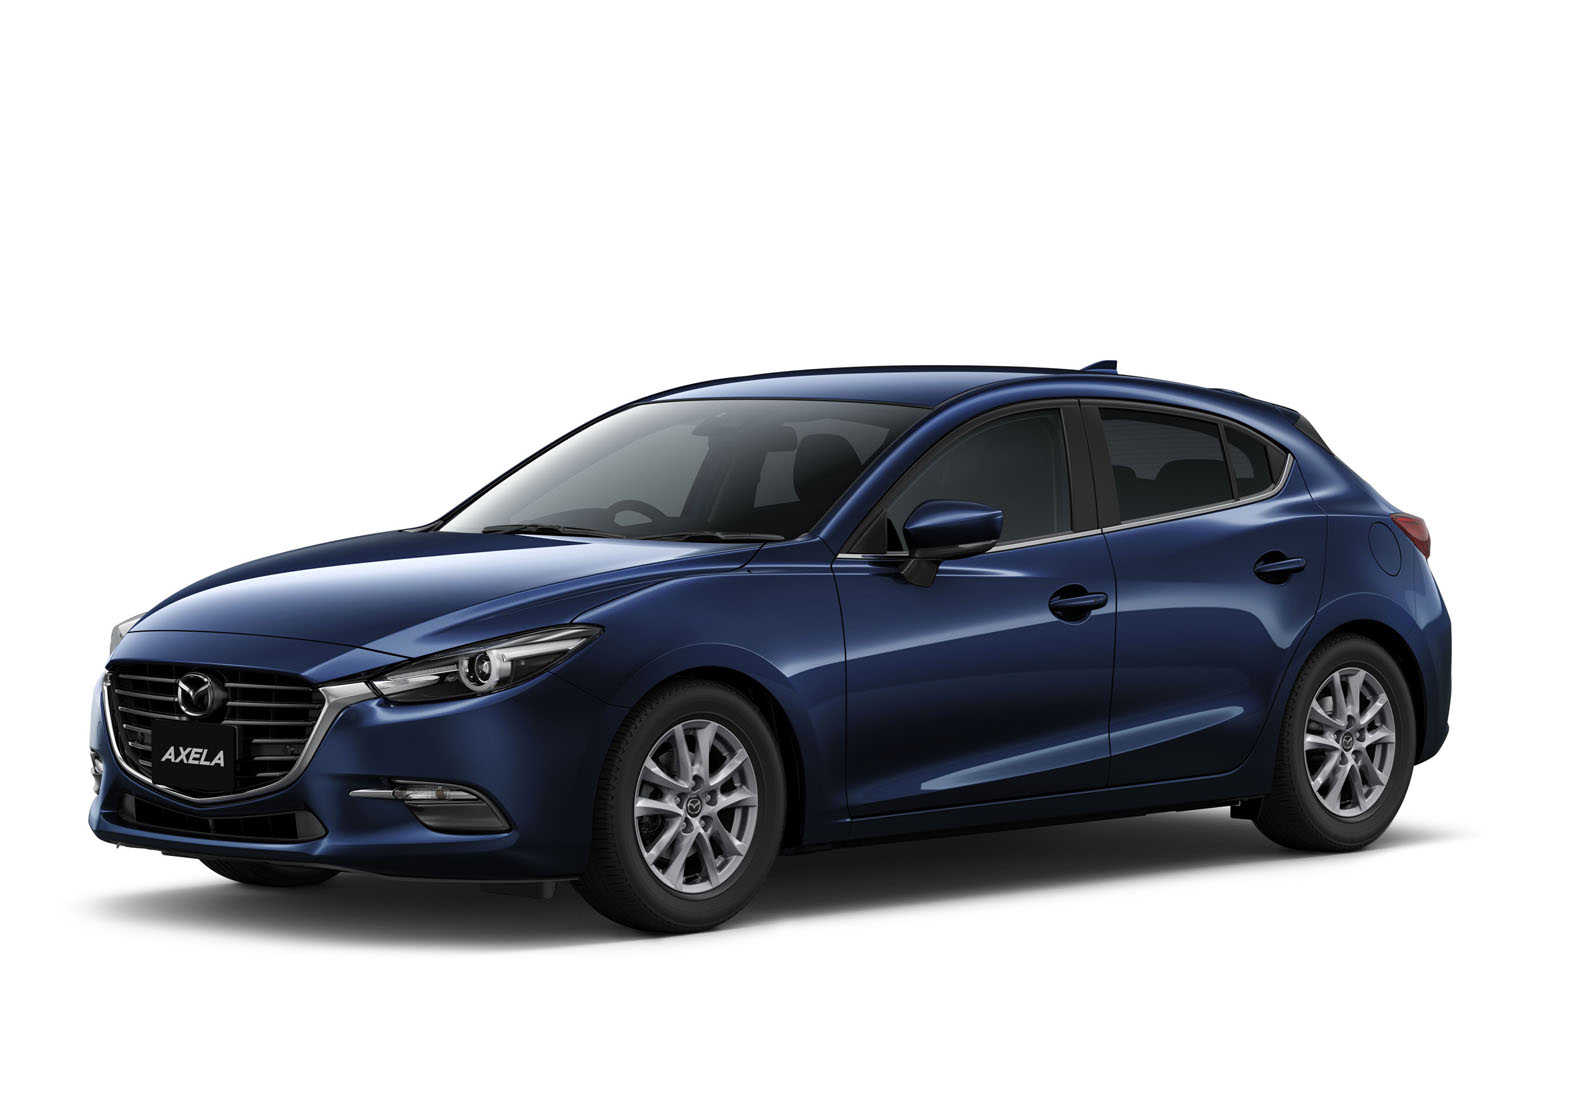 2017_Mazda_3_Facelift (47)